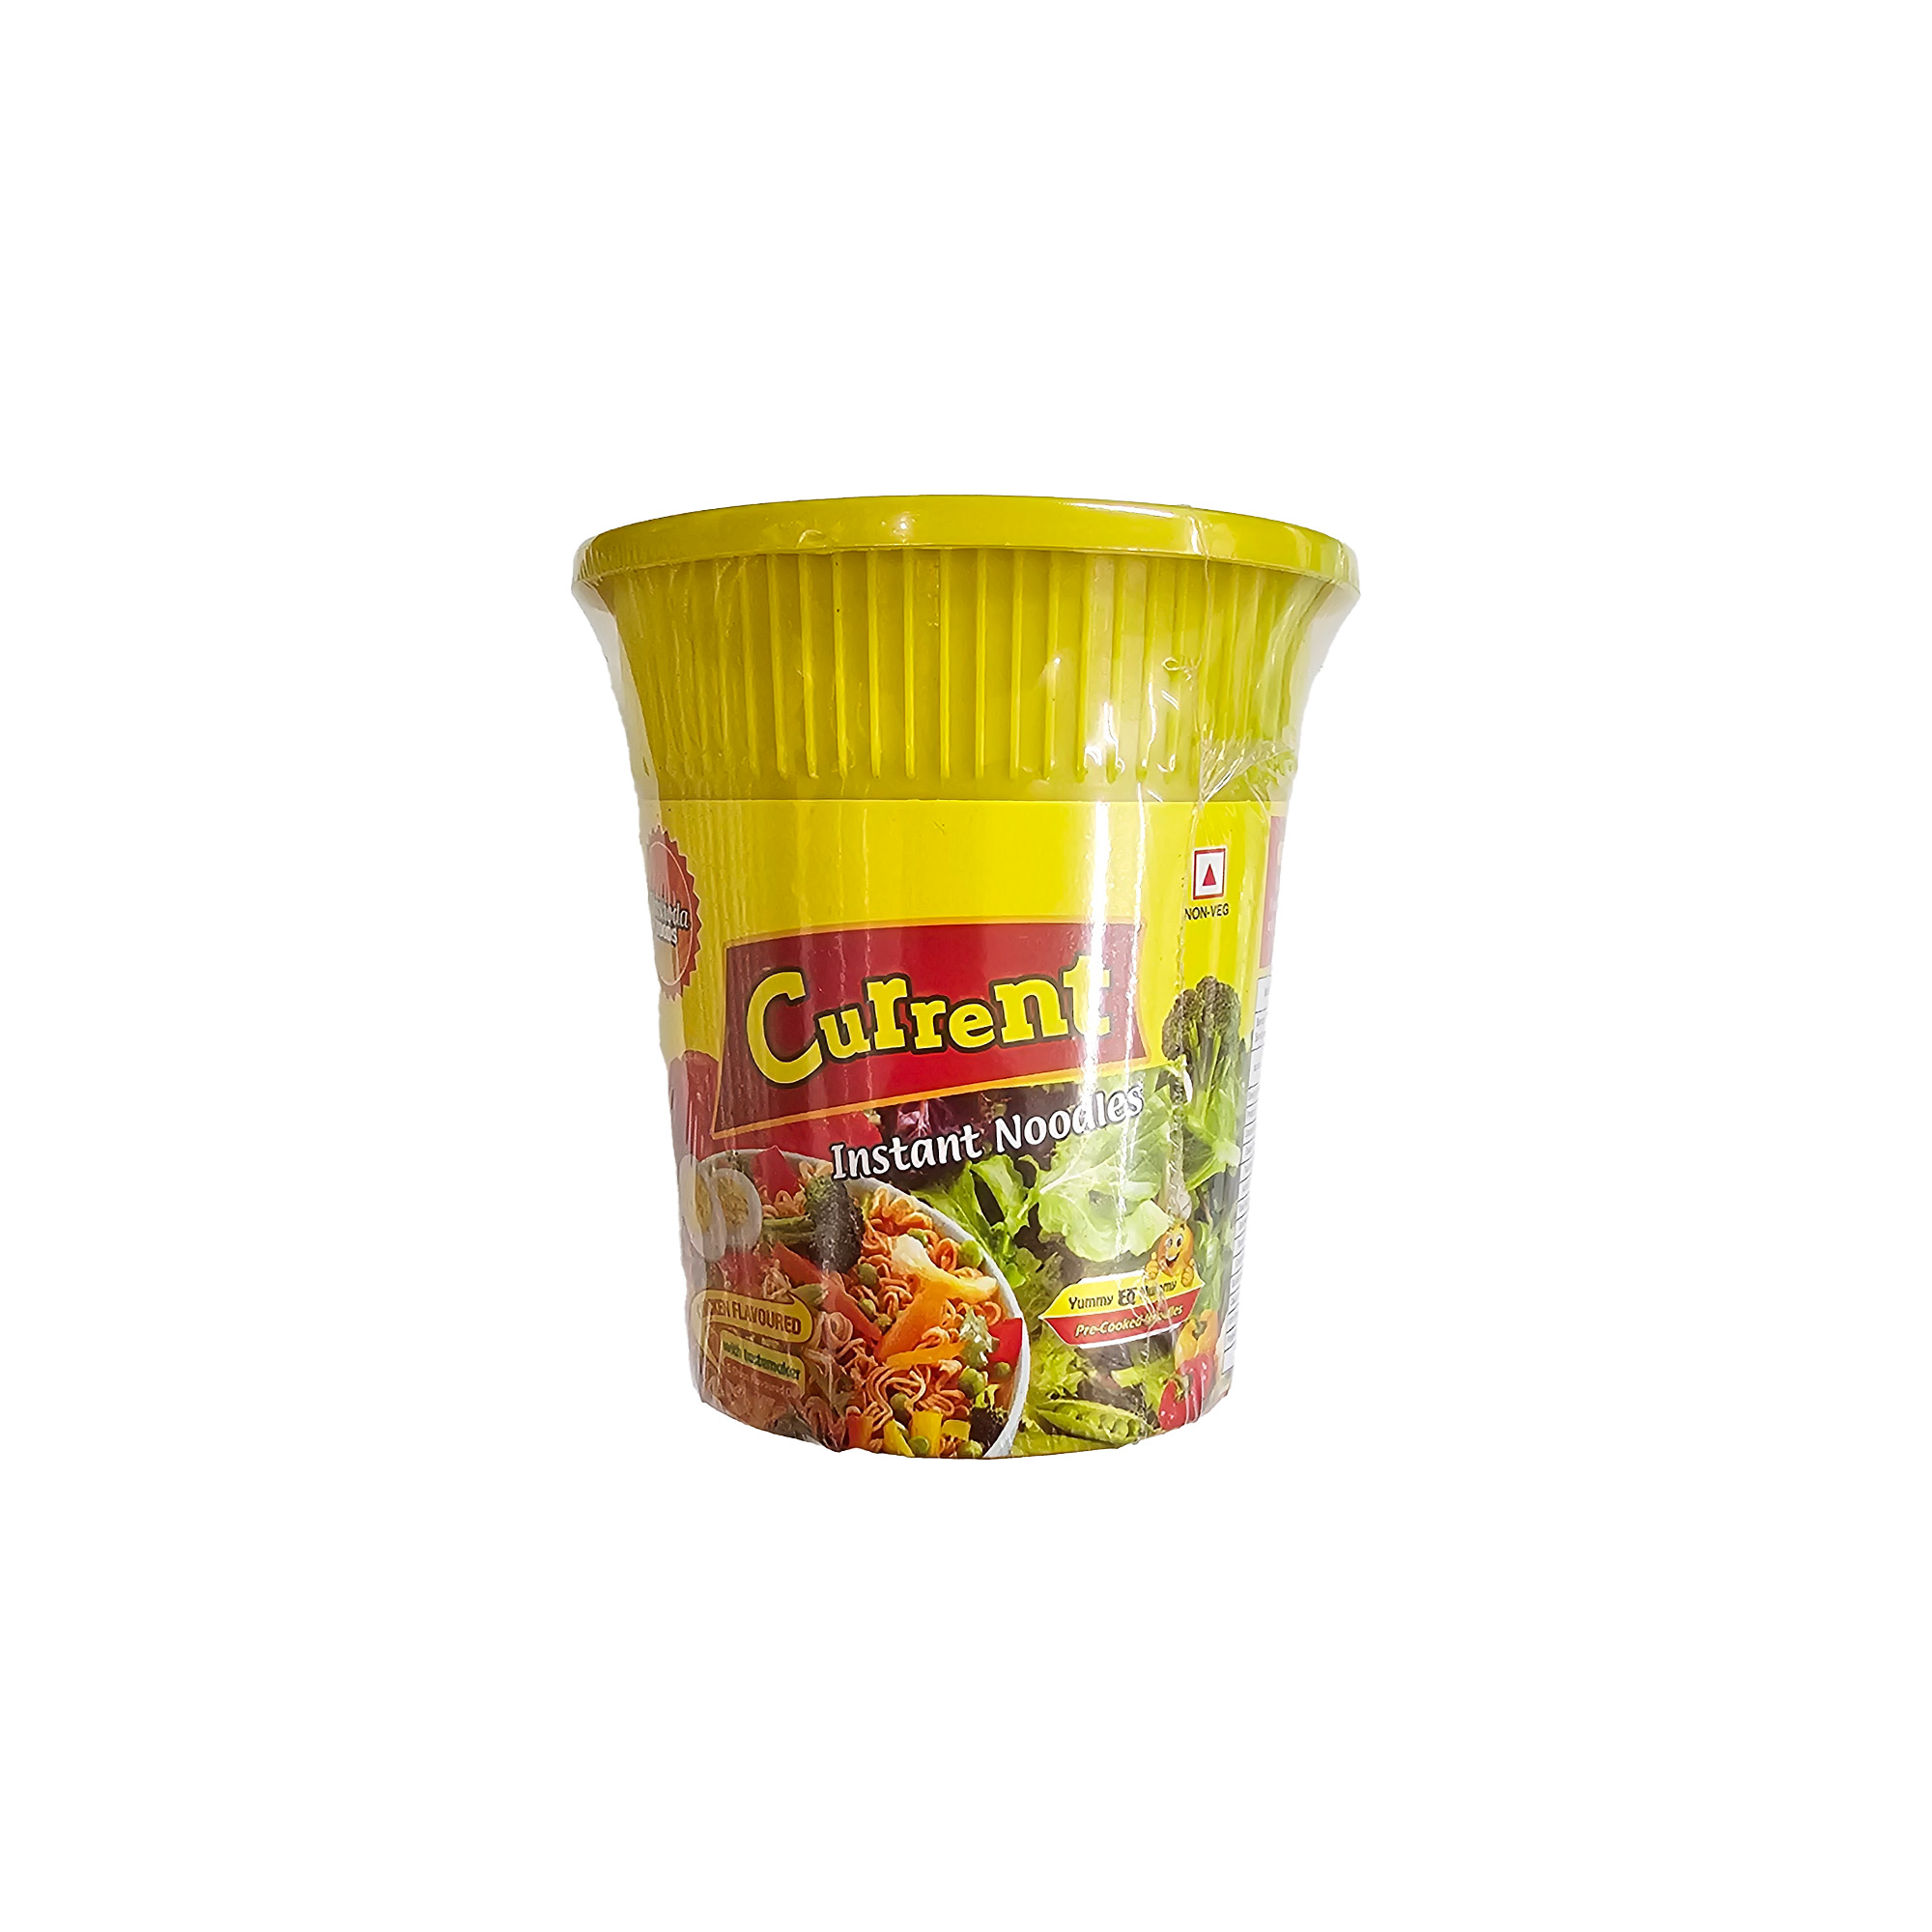 Cup Noodles :: Current Instant Noodles(Chicken Flavour)